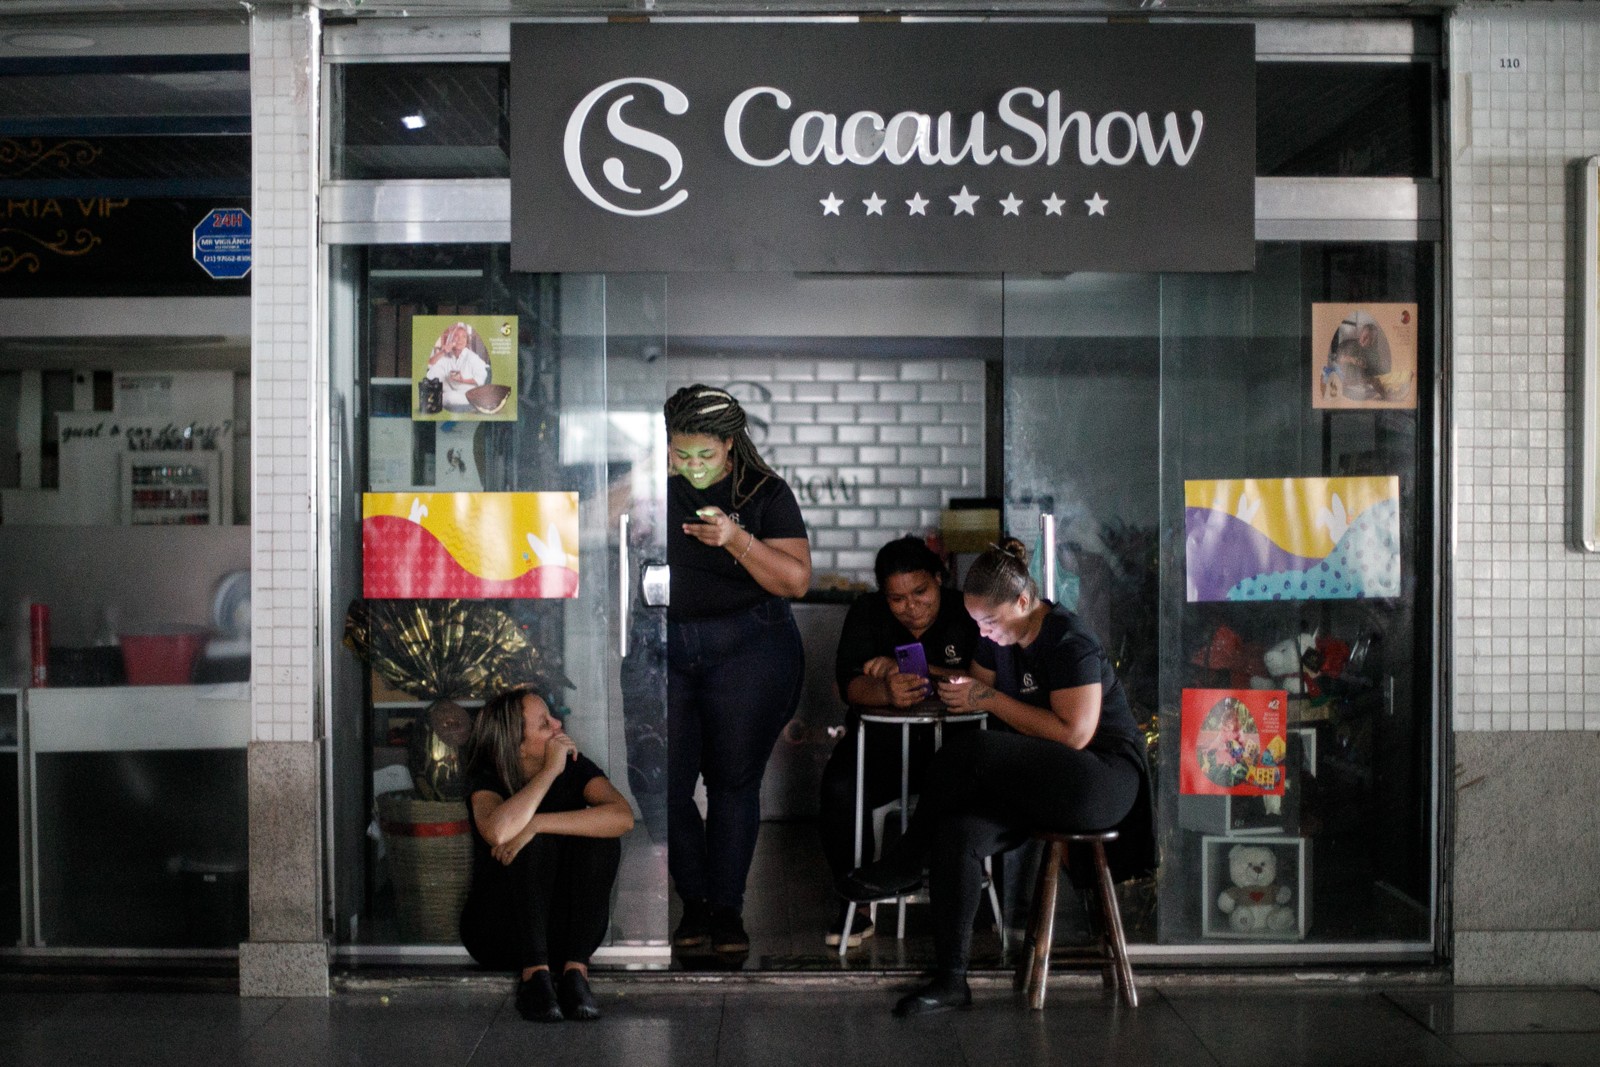 Funcionárias de loja de chocolate ficam atentas  ao celular em pausa forçada no trabalho devido a apagão — Foto: Brenno Carvalho/Agência O Globo